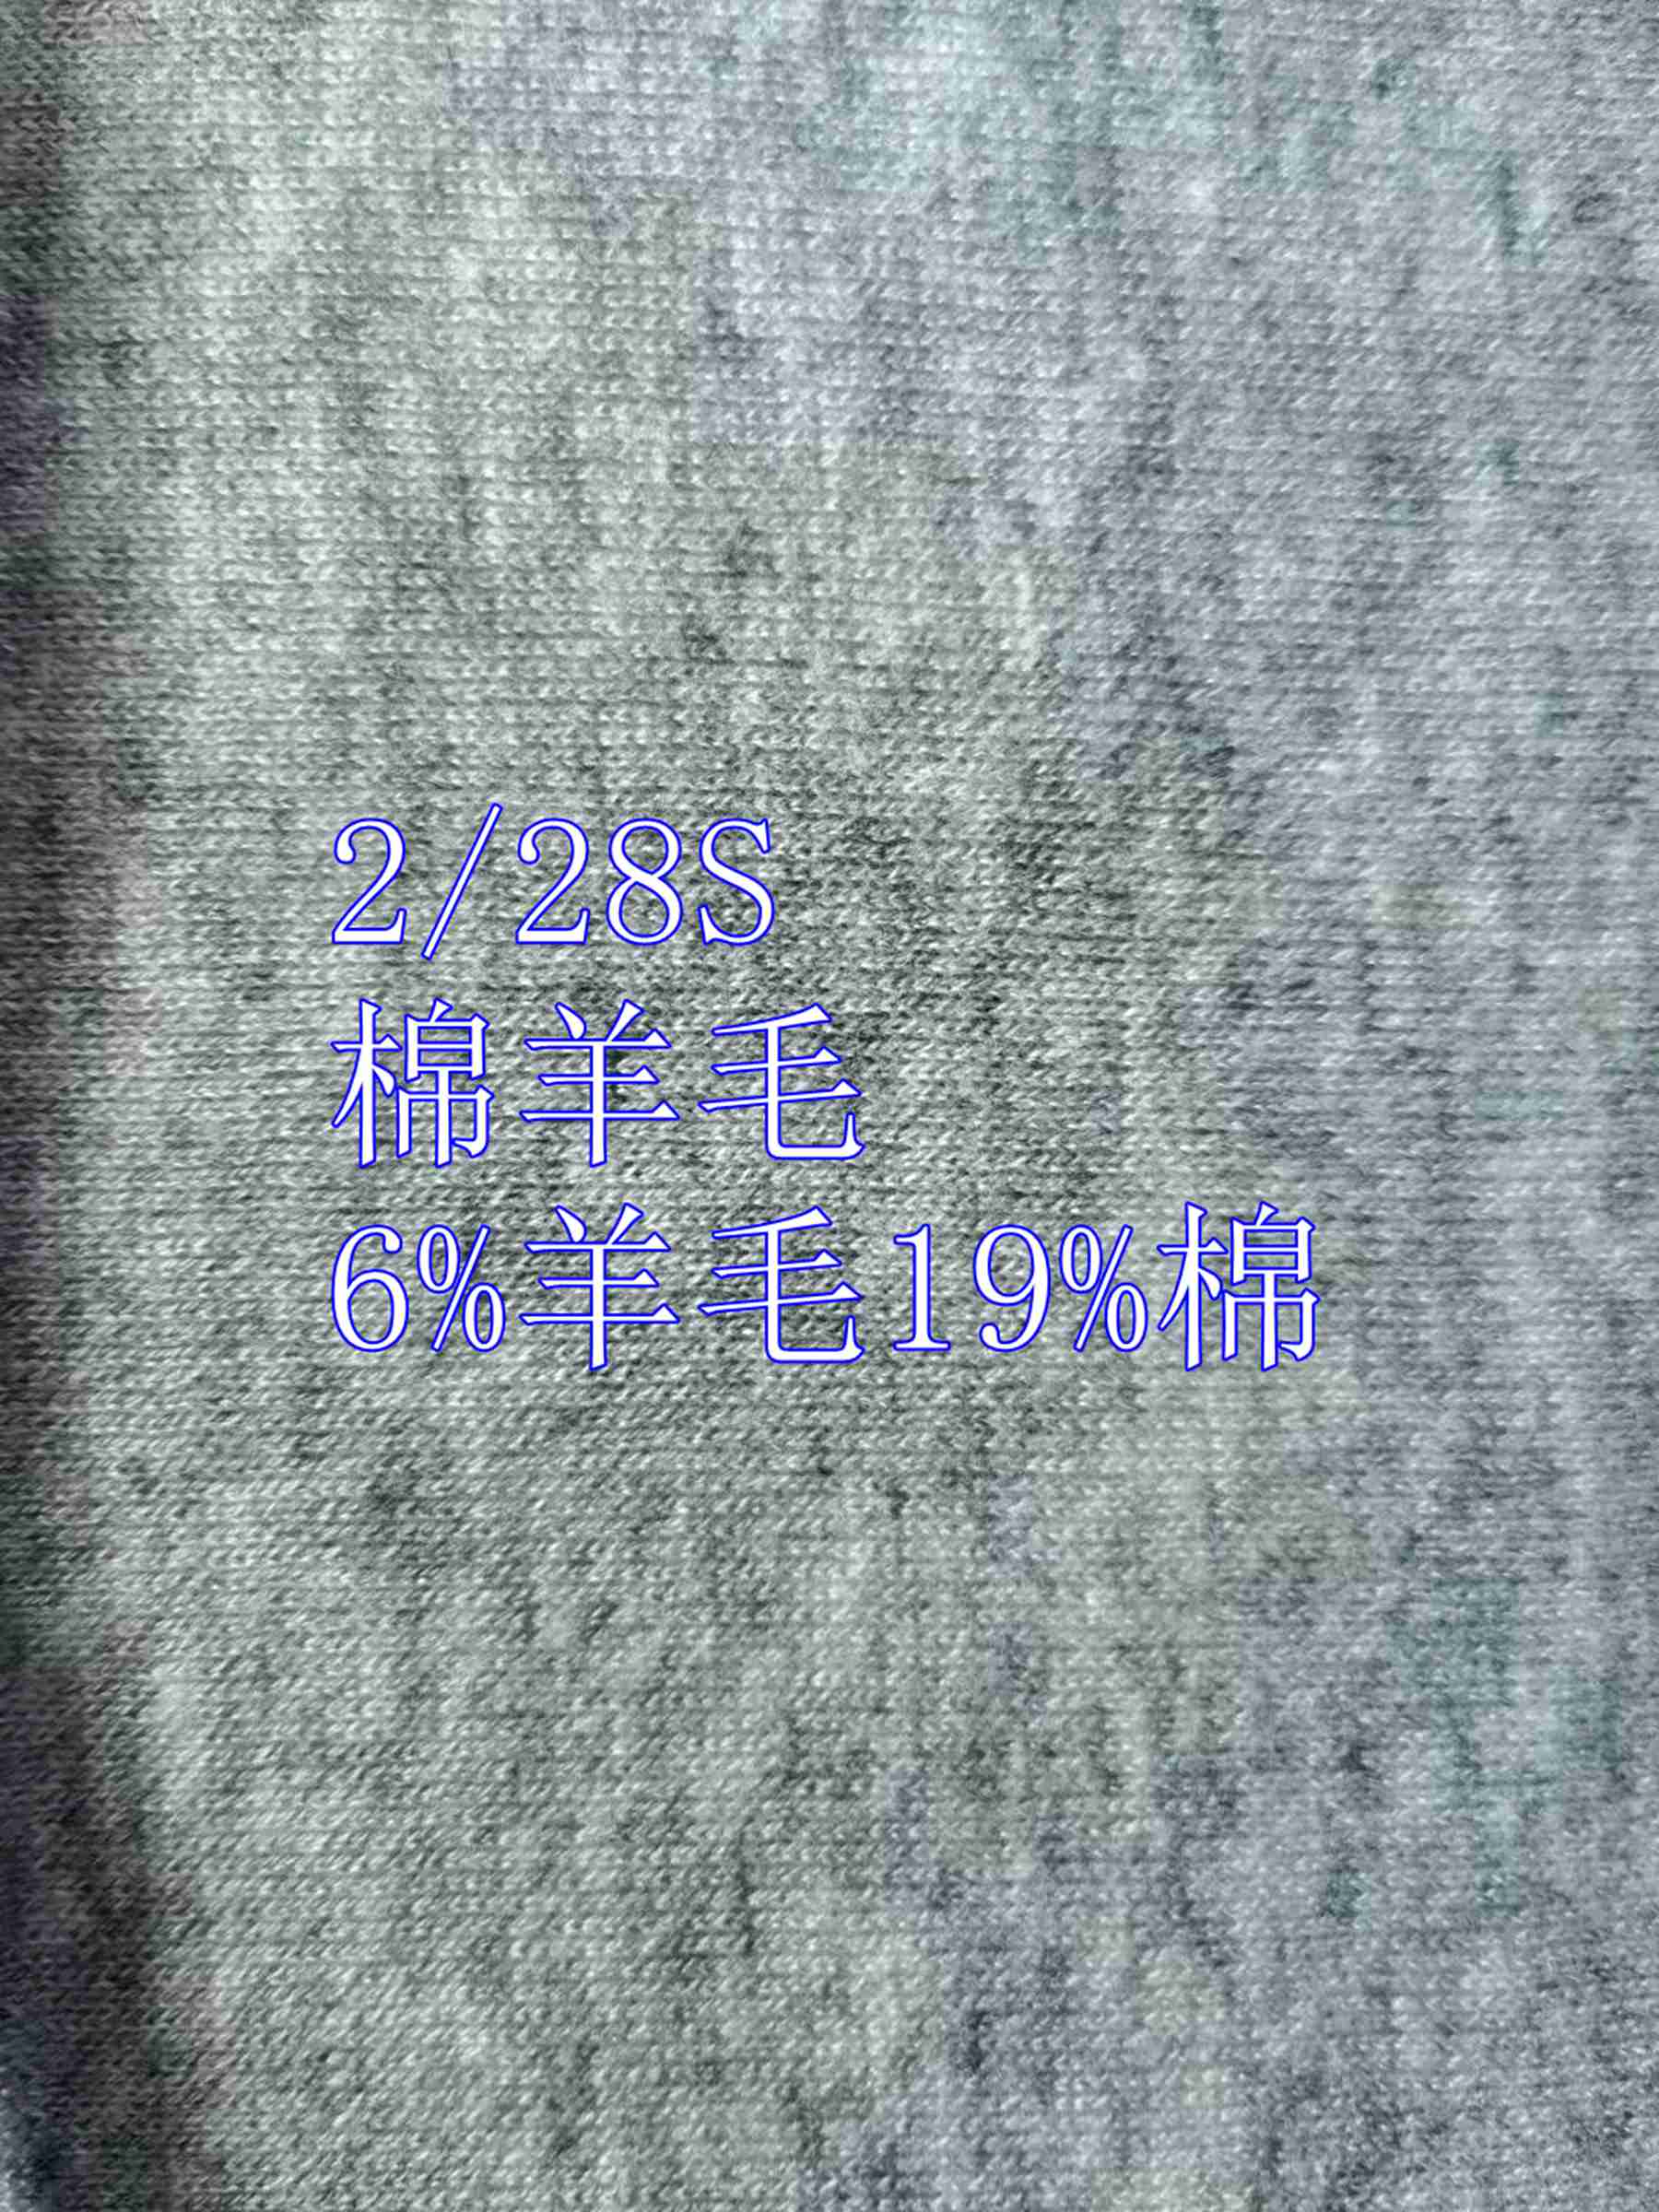 棉羊毛混纺纱线2/28S 6%羊毛 19%棉 20%尼龙 55%涤纶​